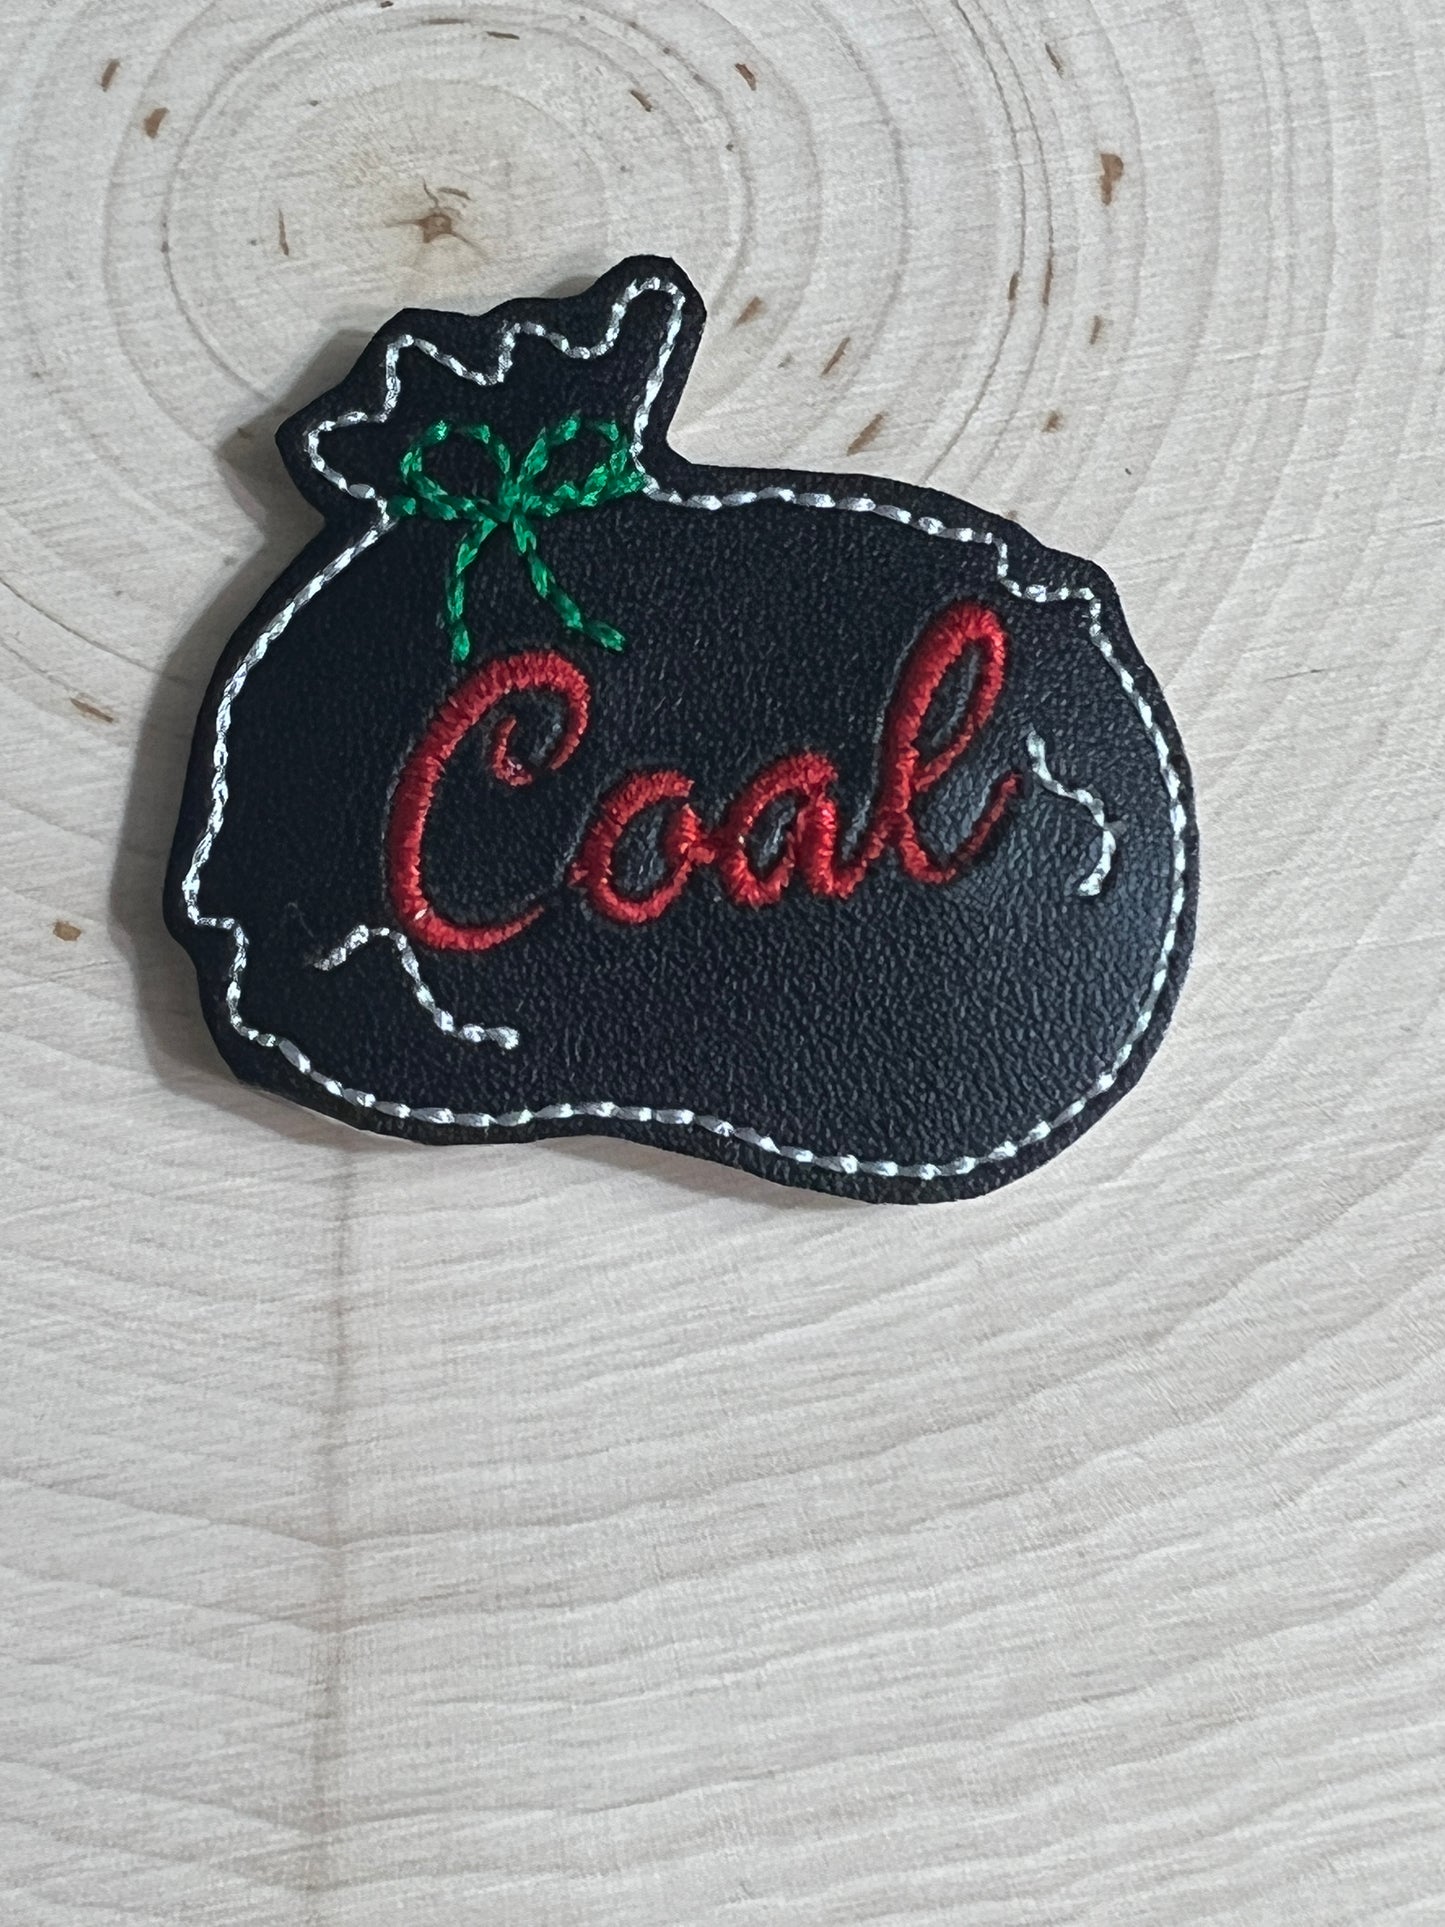 Coal Santa bag